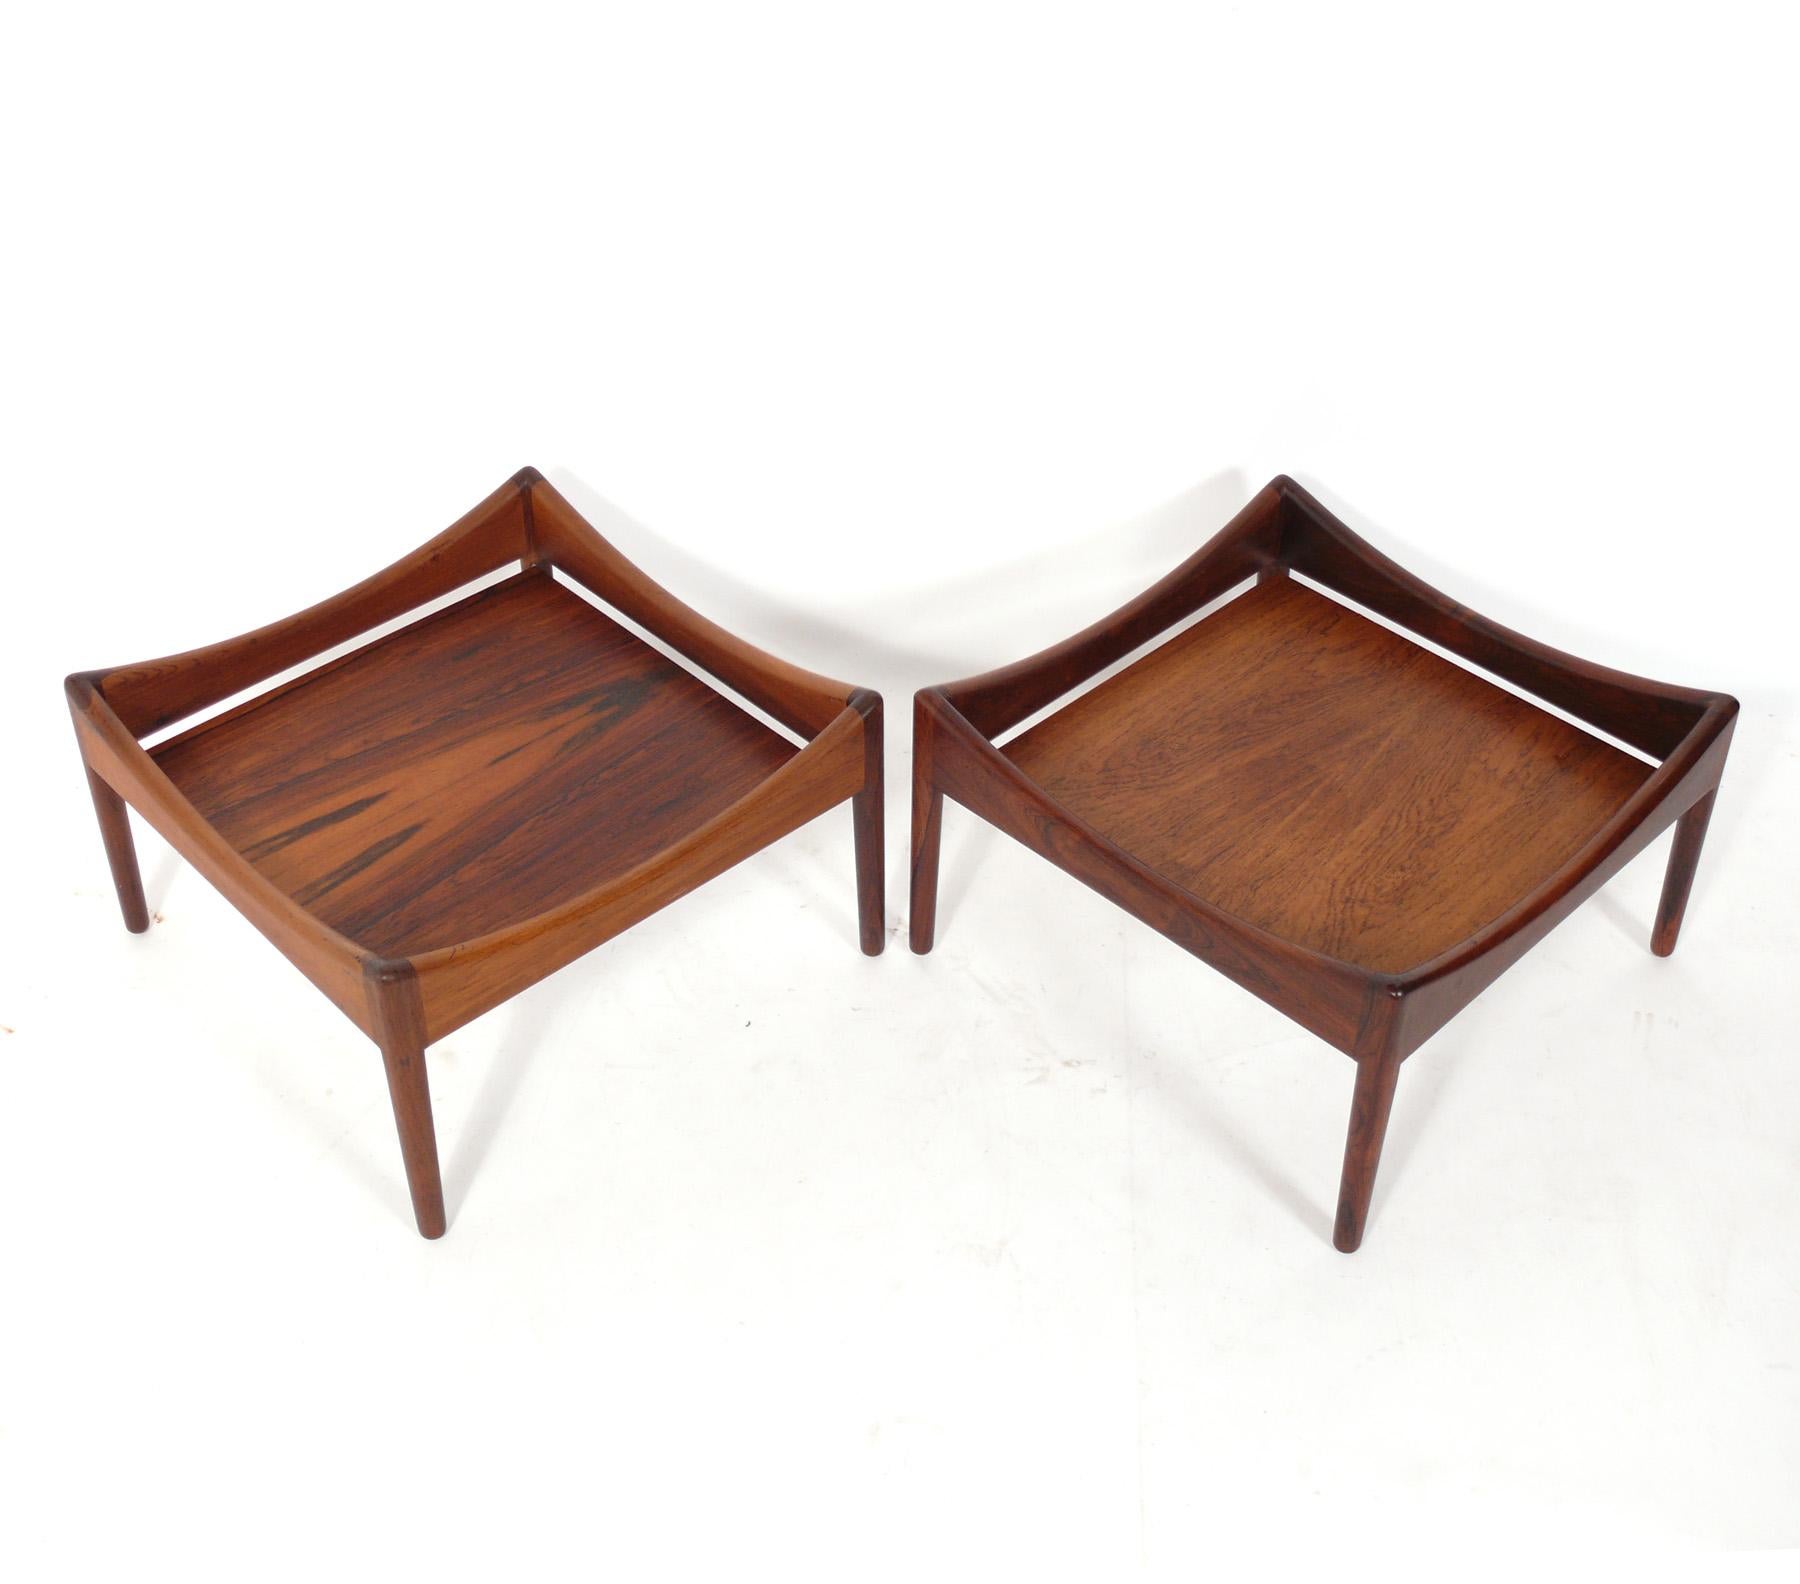 Zwei dänische moderne Palisander-Tische, entworfen von Kristian Vedel für Soren Willadsen, Dänemark, ca. 1960er Jahre. Diese Tische haben eine vielseitige Größe und können als Beistelltische oder als niedrige Nachttische verwendet werden. Sie